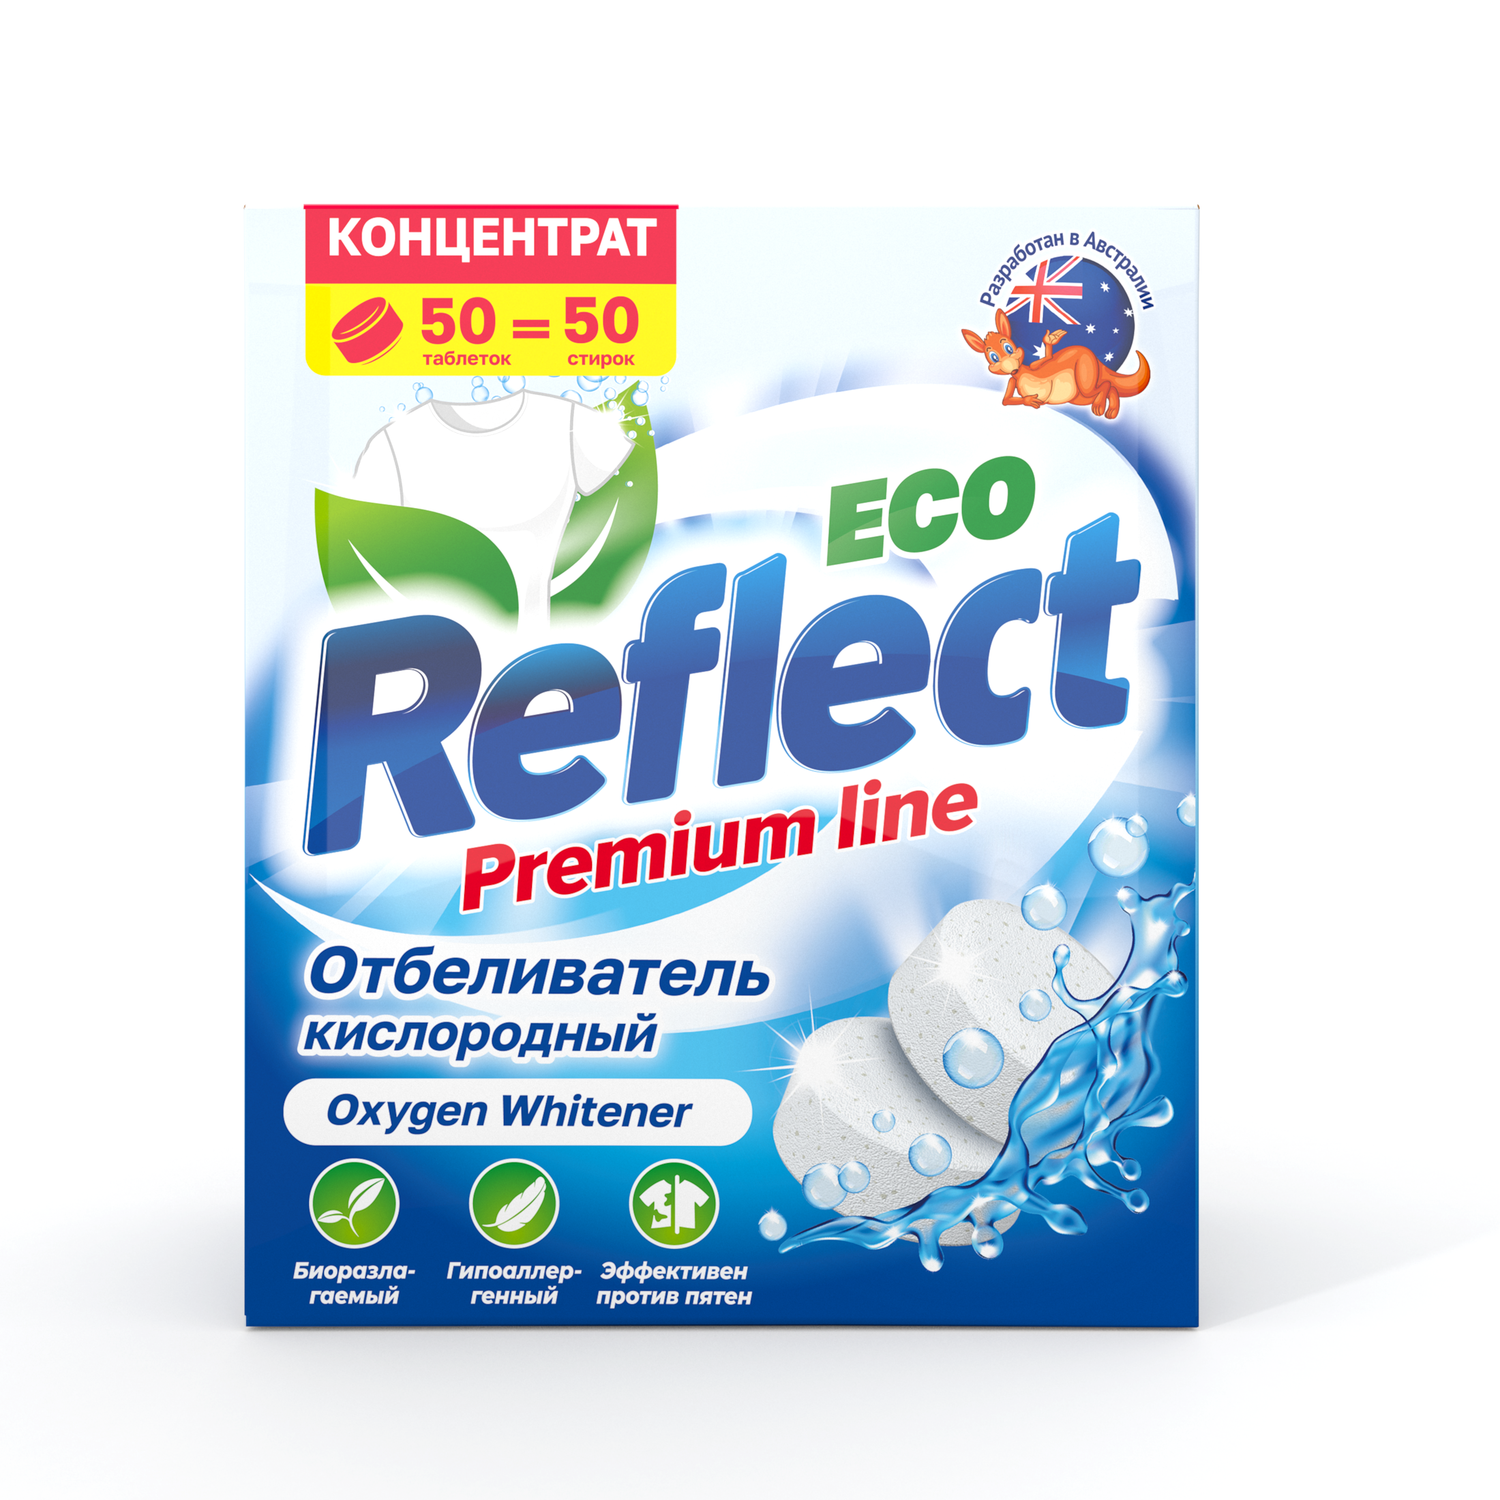 Отбеливатель Oxygen Whitener Reflect Premium для стирки светлого и белого белья экологичный кислородный без хлора 50 таблеток - фото 2